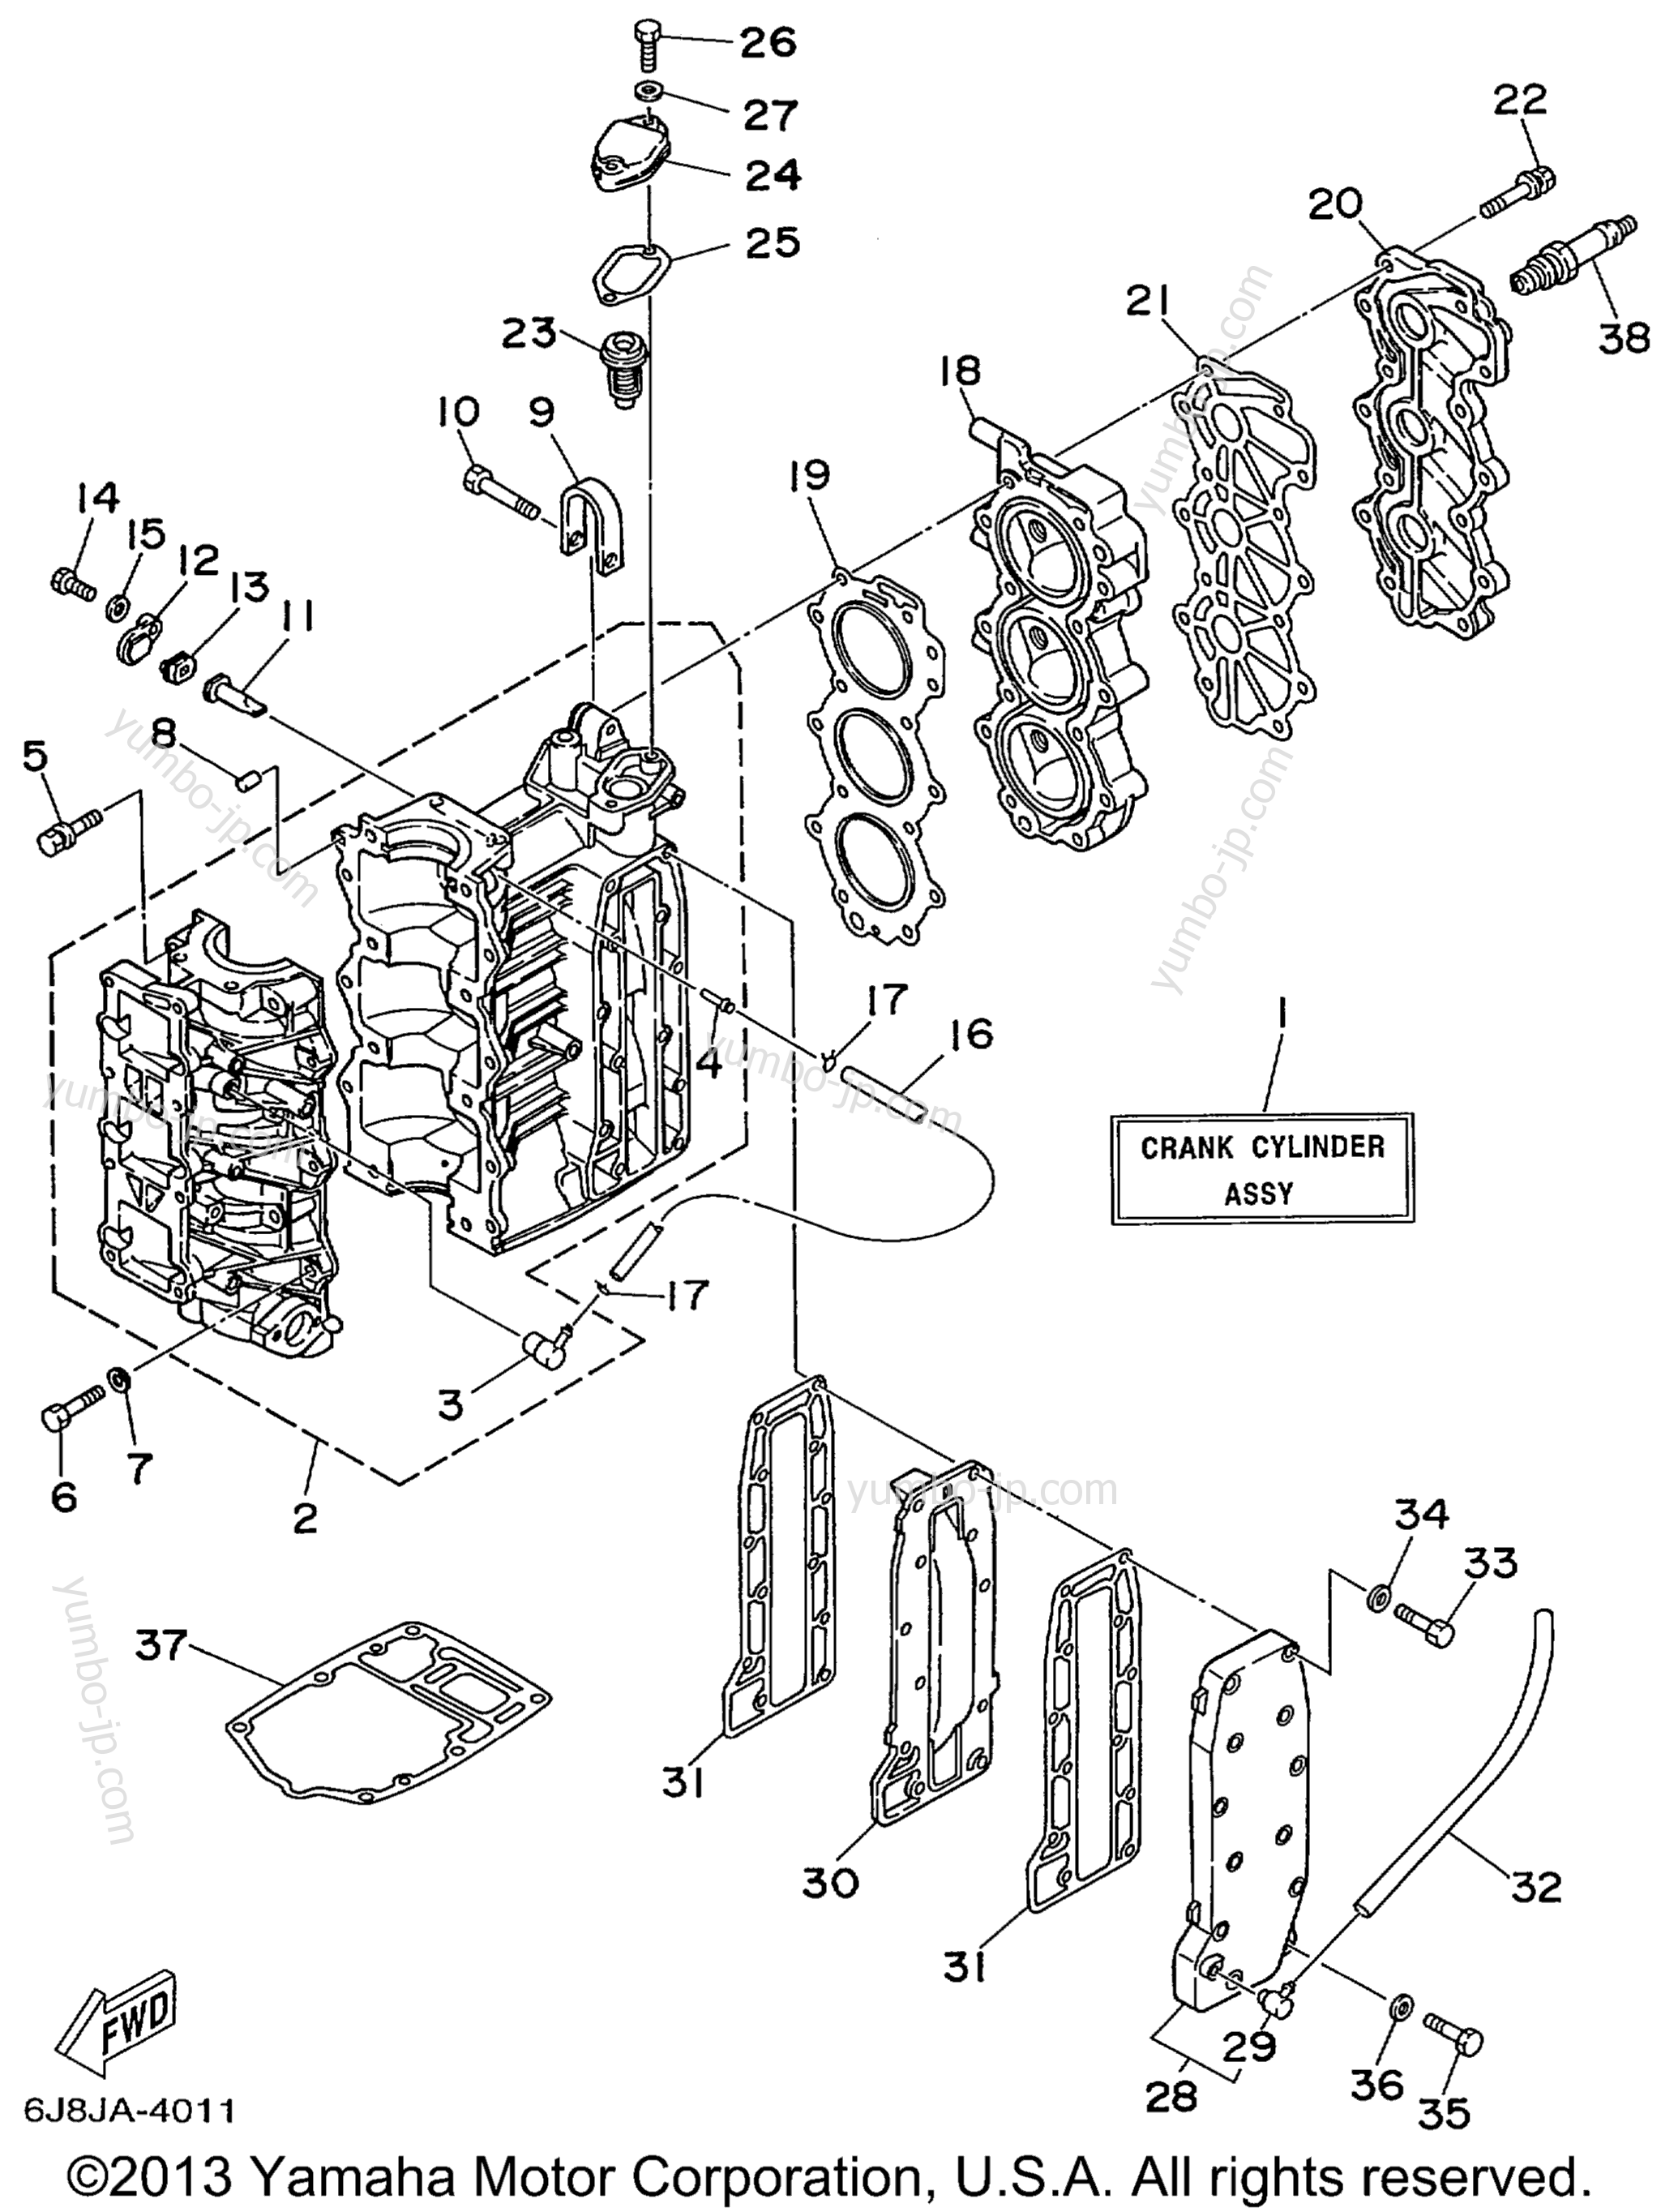 Cylinder Crankcase для лодочных моторов YAMAHA 30MSHX_MLHX_ELHX_ELRX (30ELHX) 1999 г.